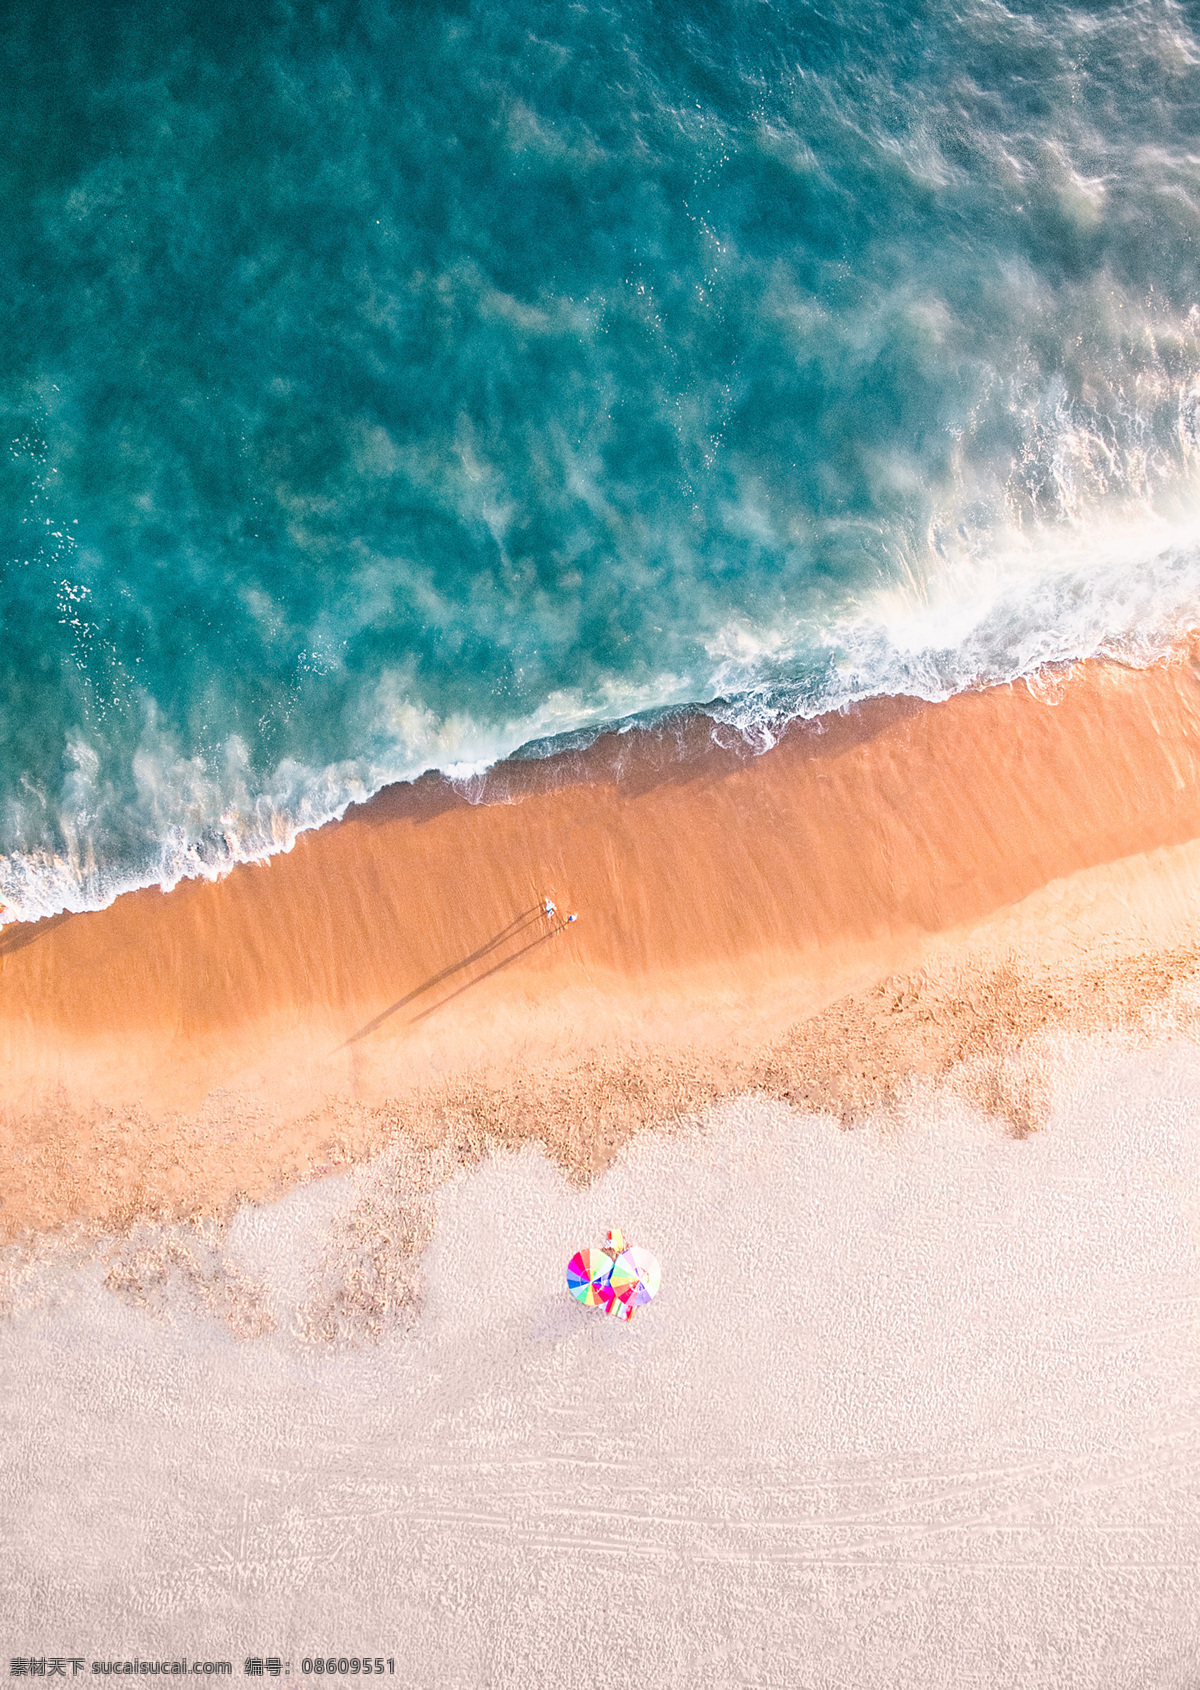 迷人海景 迷人 唯美 海景 海湾 海浪 浪花 海水 旅游风光 度假 玩耍 太阳伞 阳光 海滩 抽象 海岸 海报 照片 旅游摄影 自然风景